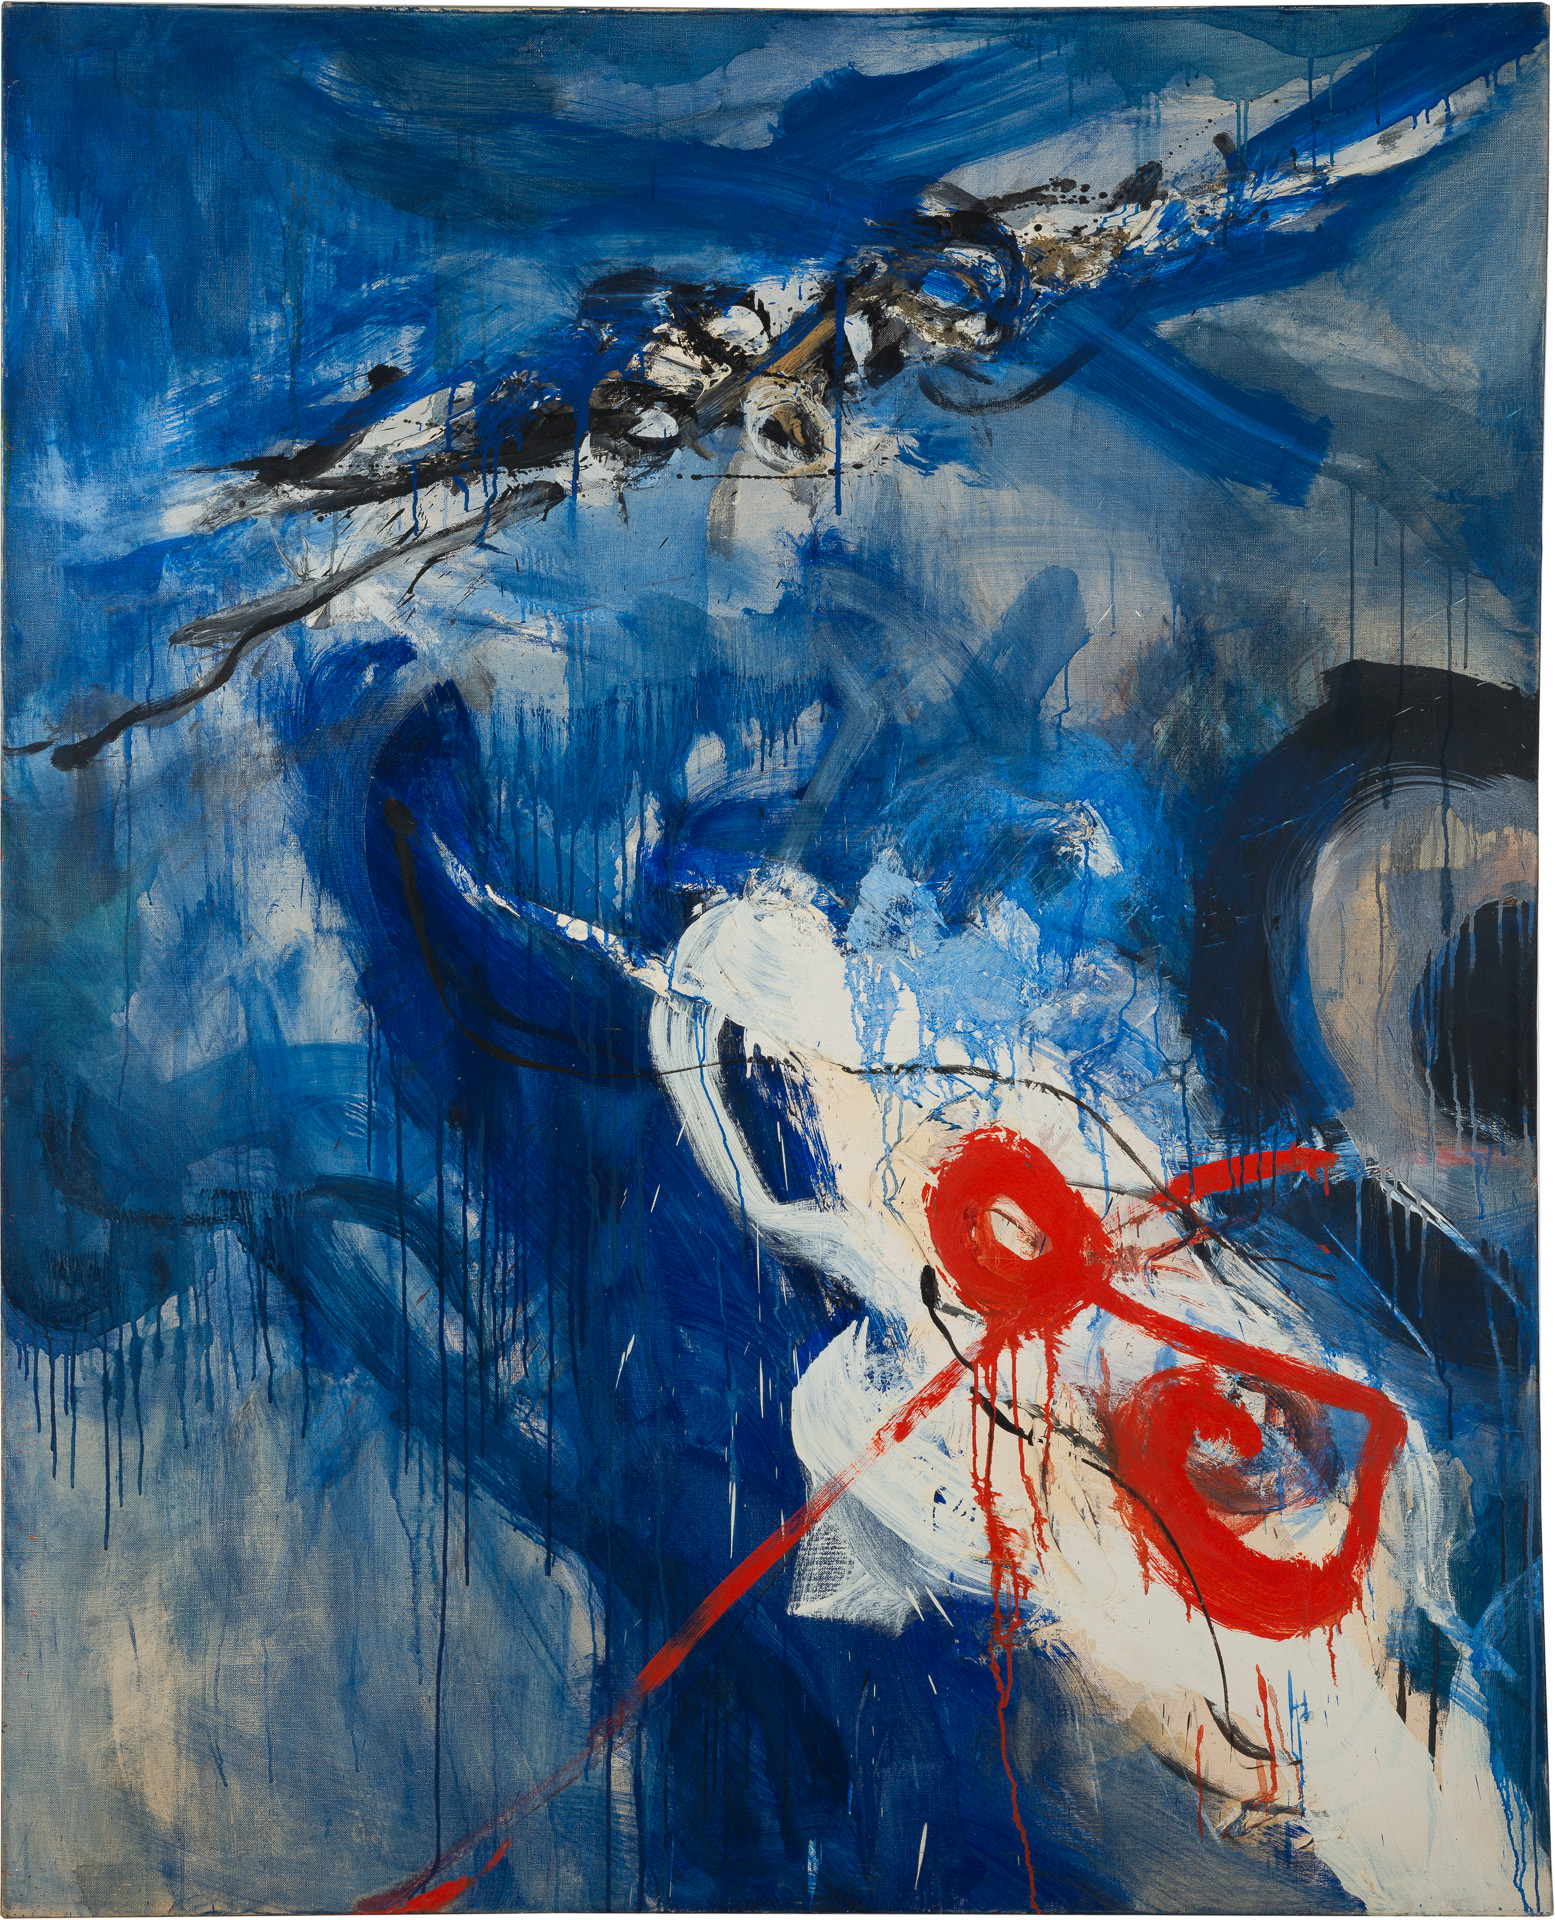 近藤竜男〈Work〉, 油彩・カンヴァス, 162.4×130.2, 1961